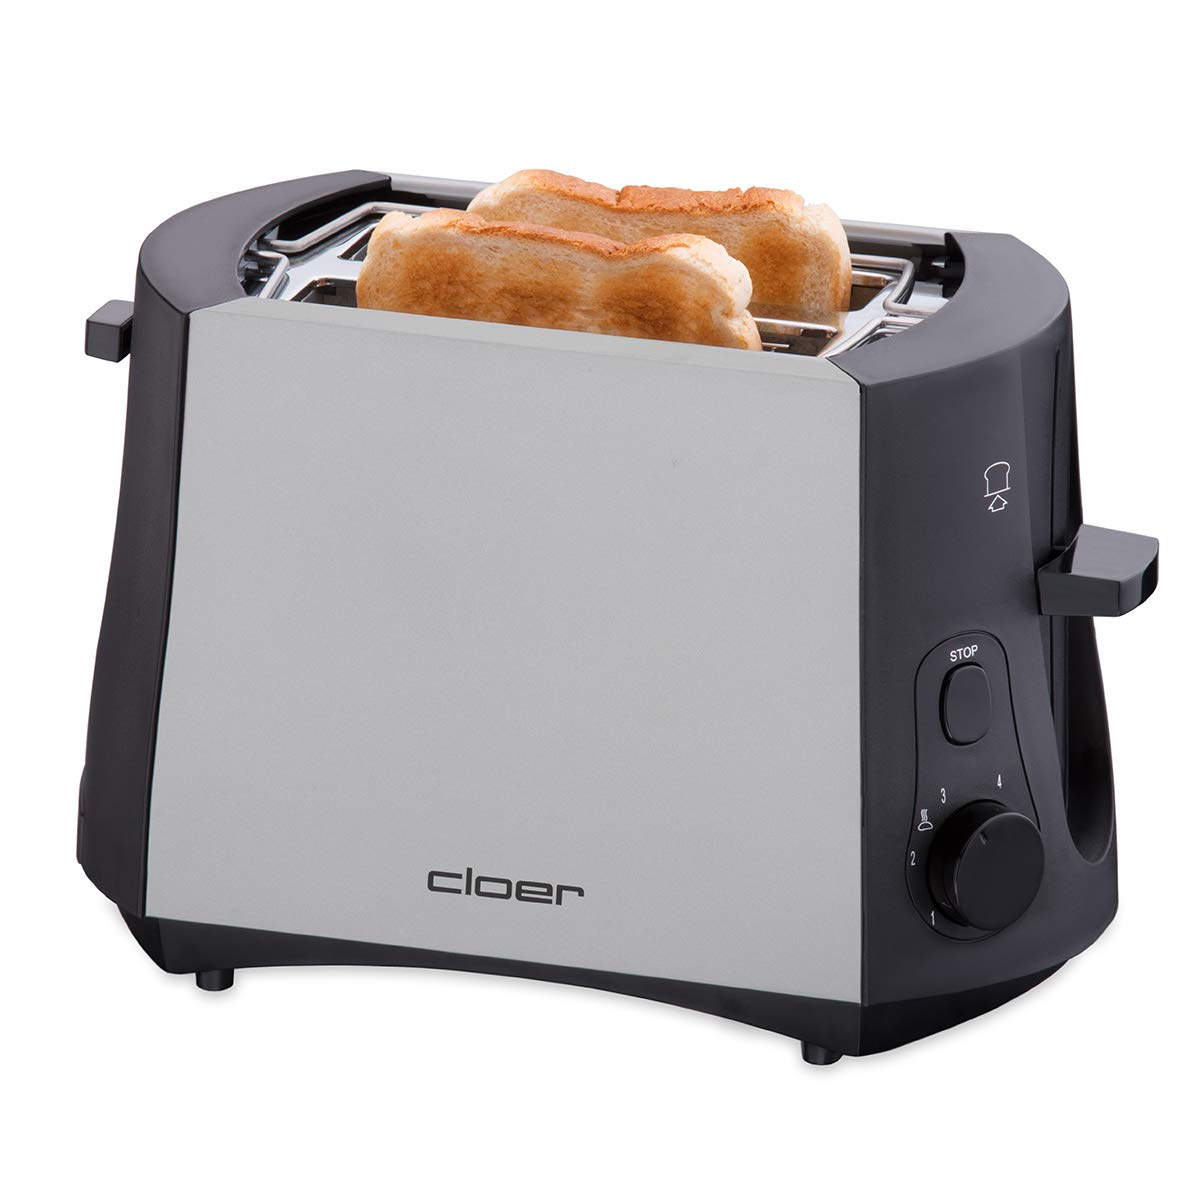 Cloer 3410 - Toaster